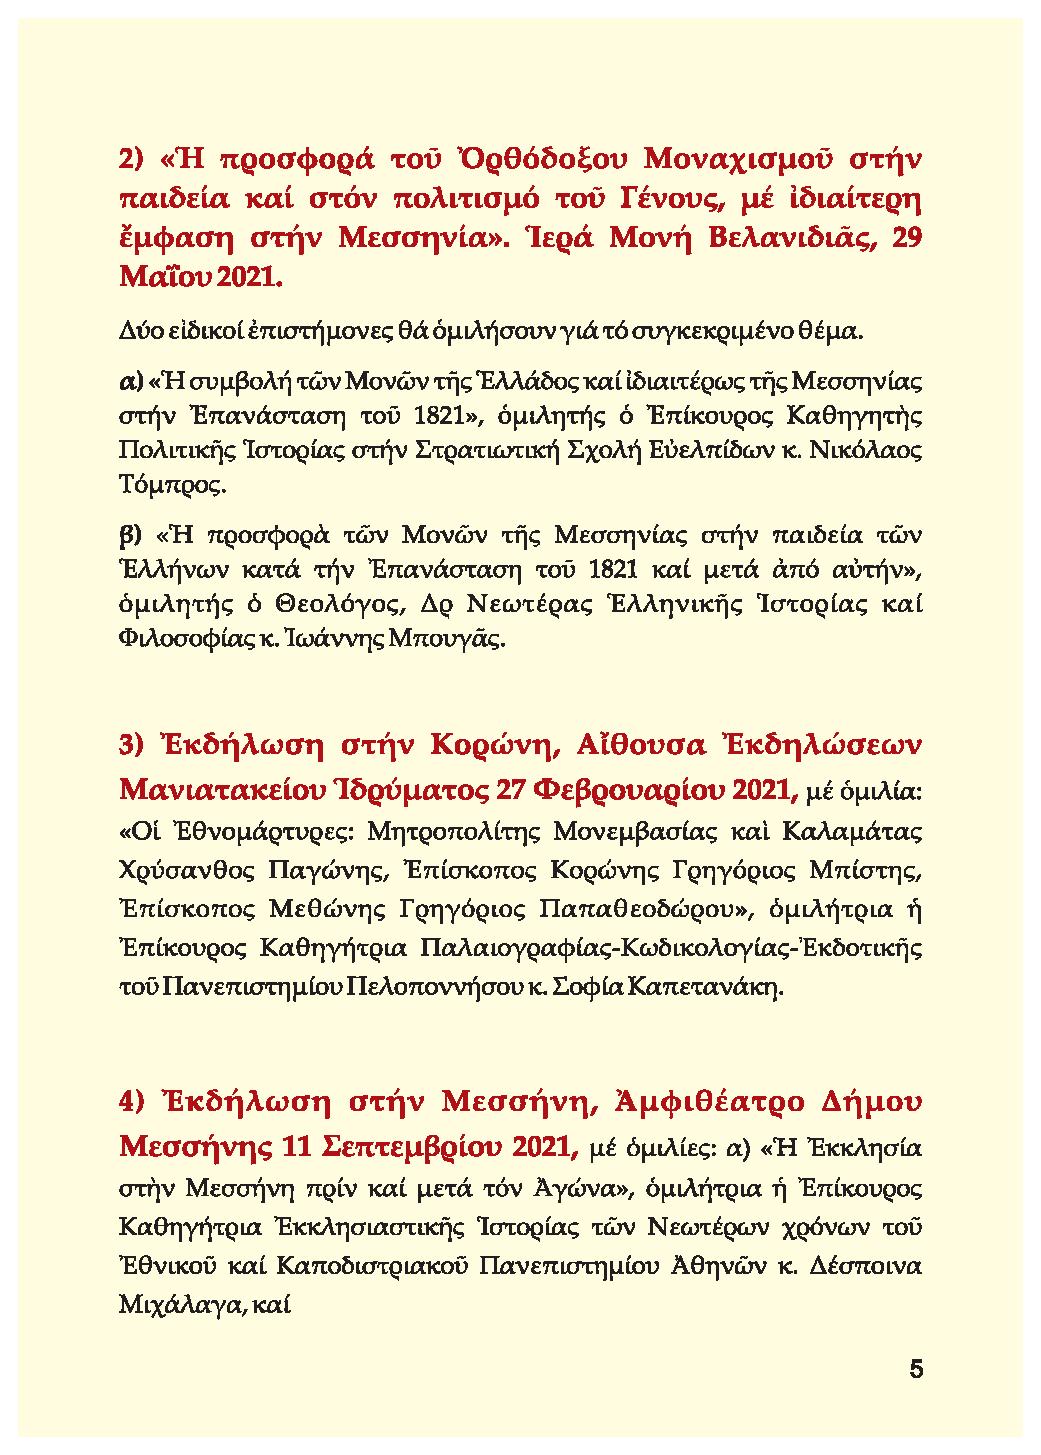 Ιερά Μητρόπολη Μεσσηνίας: Αρχή επετειακών εκδηλώσεων από την έναρξη της Ελληνικής Επανάστασης του 1821 21